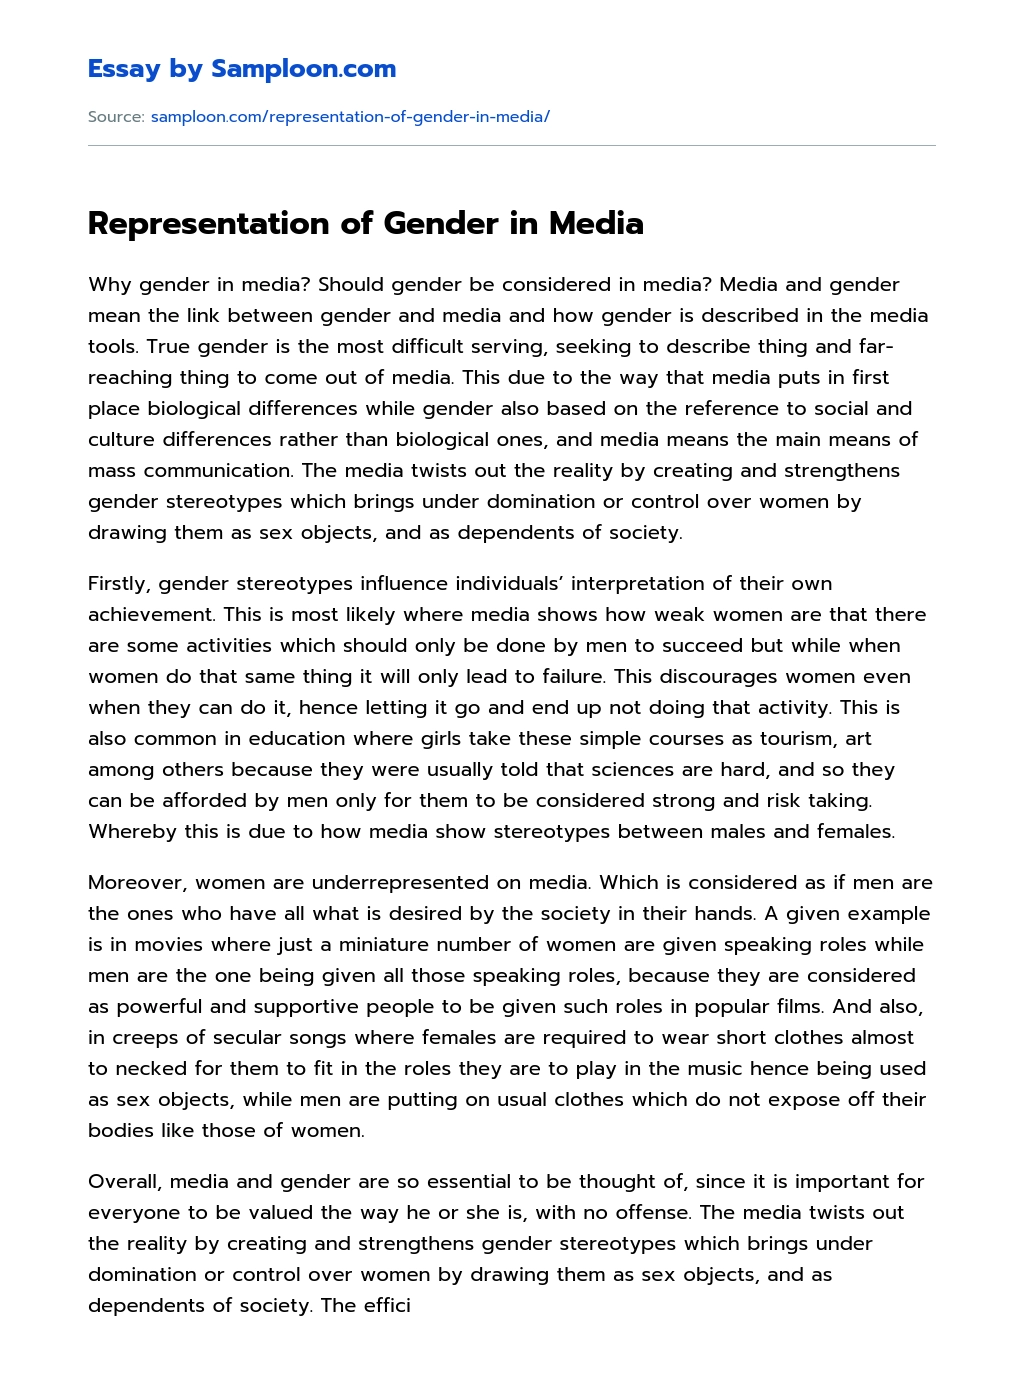 Representation of Gender in Media essay